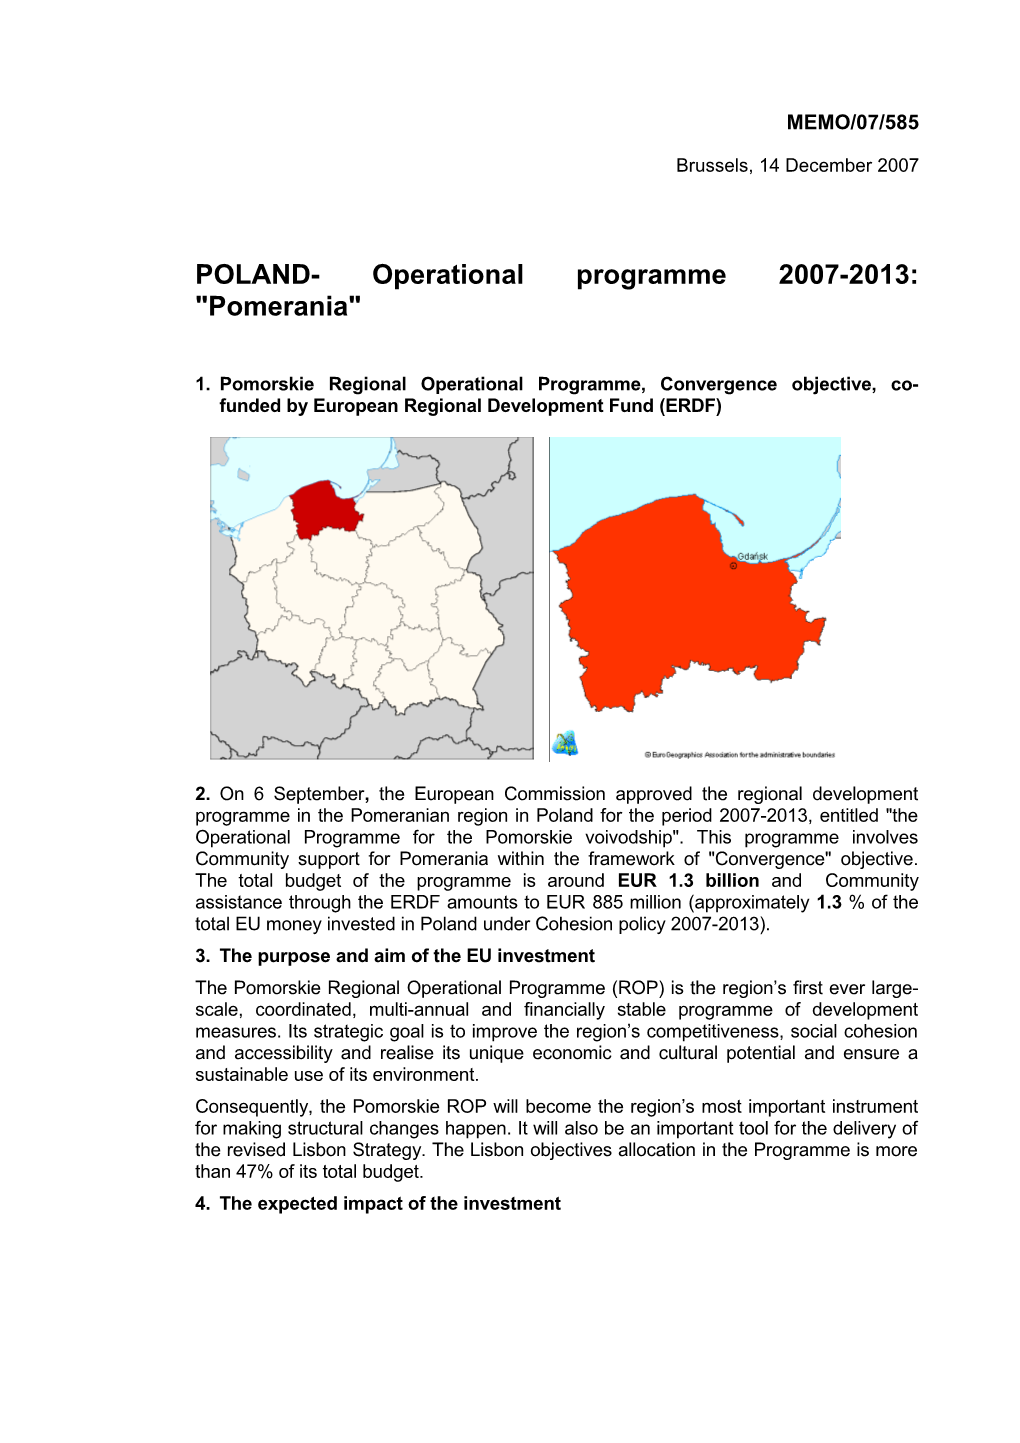 POLAND- Operational Programme 2007-2013: Pomerania